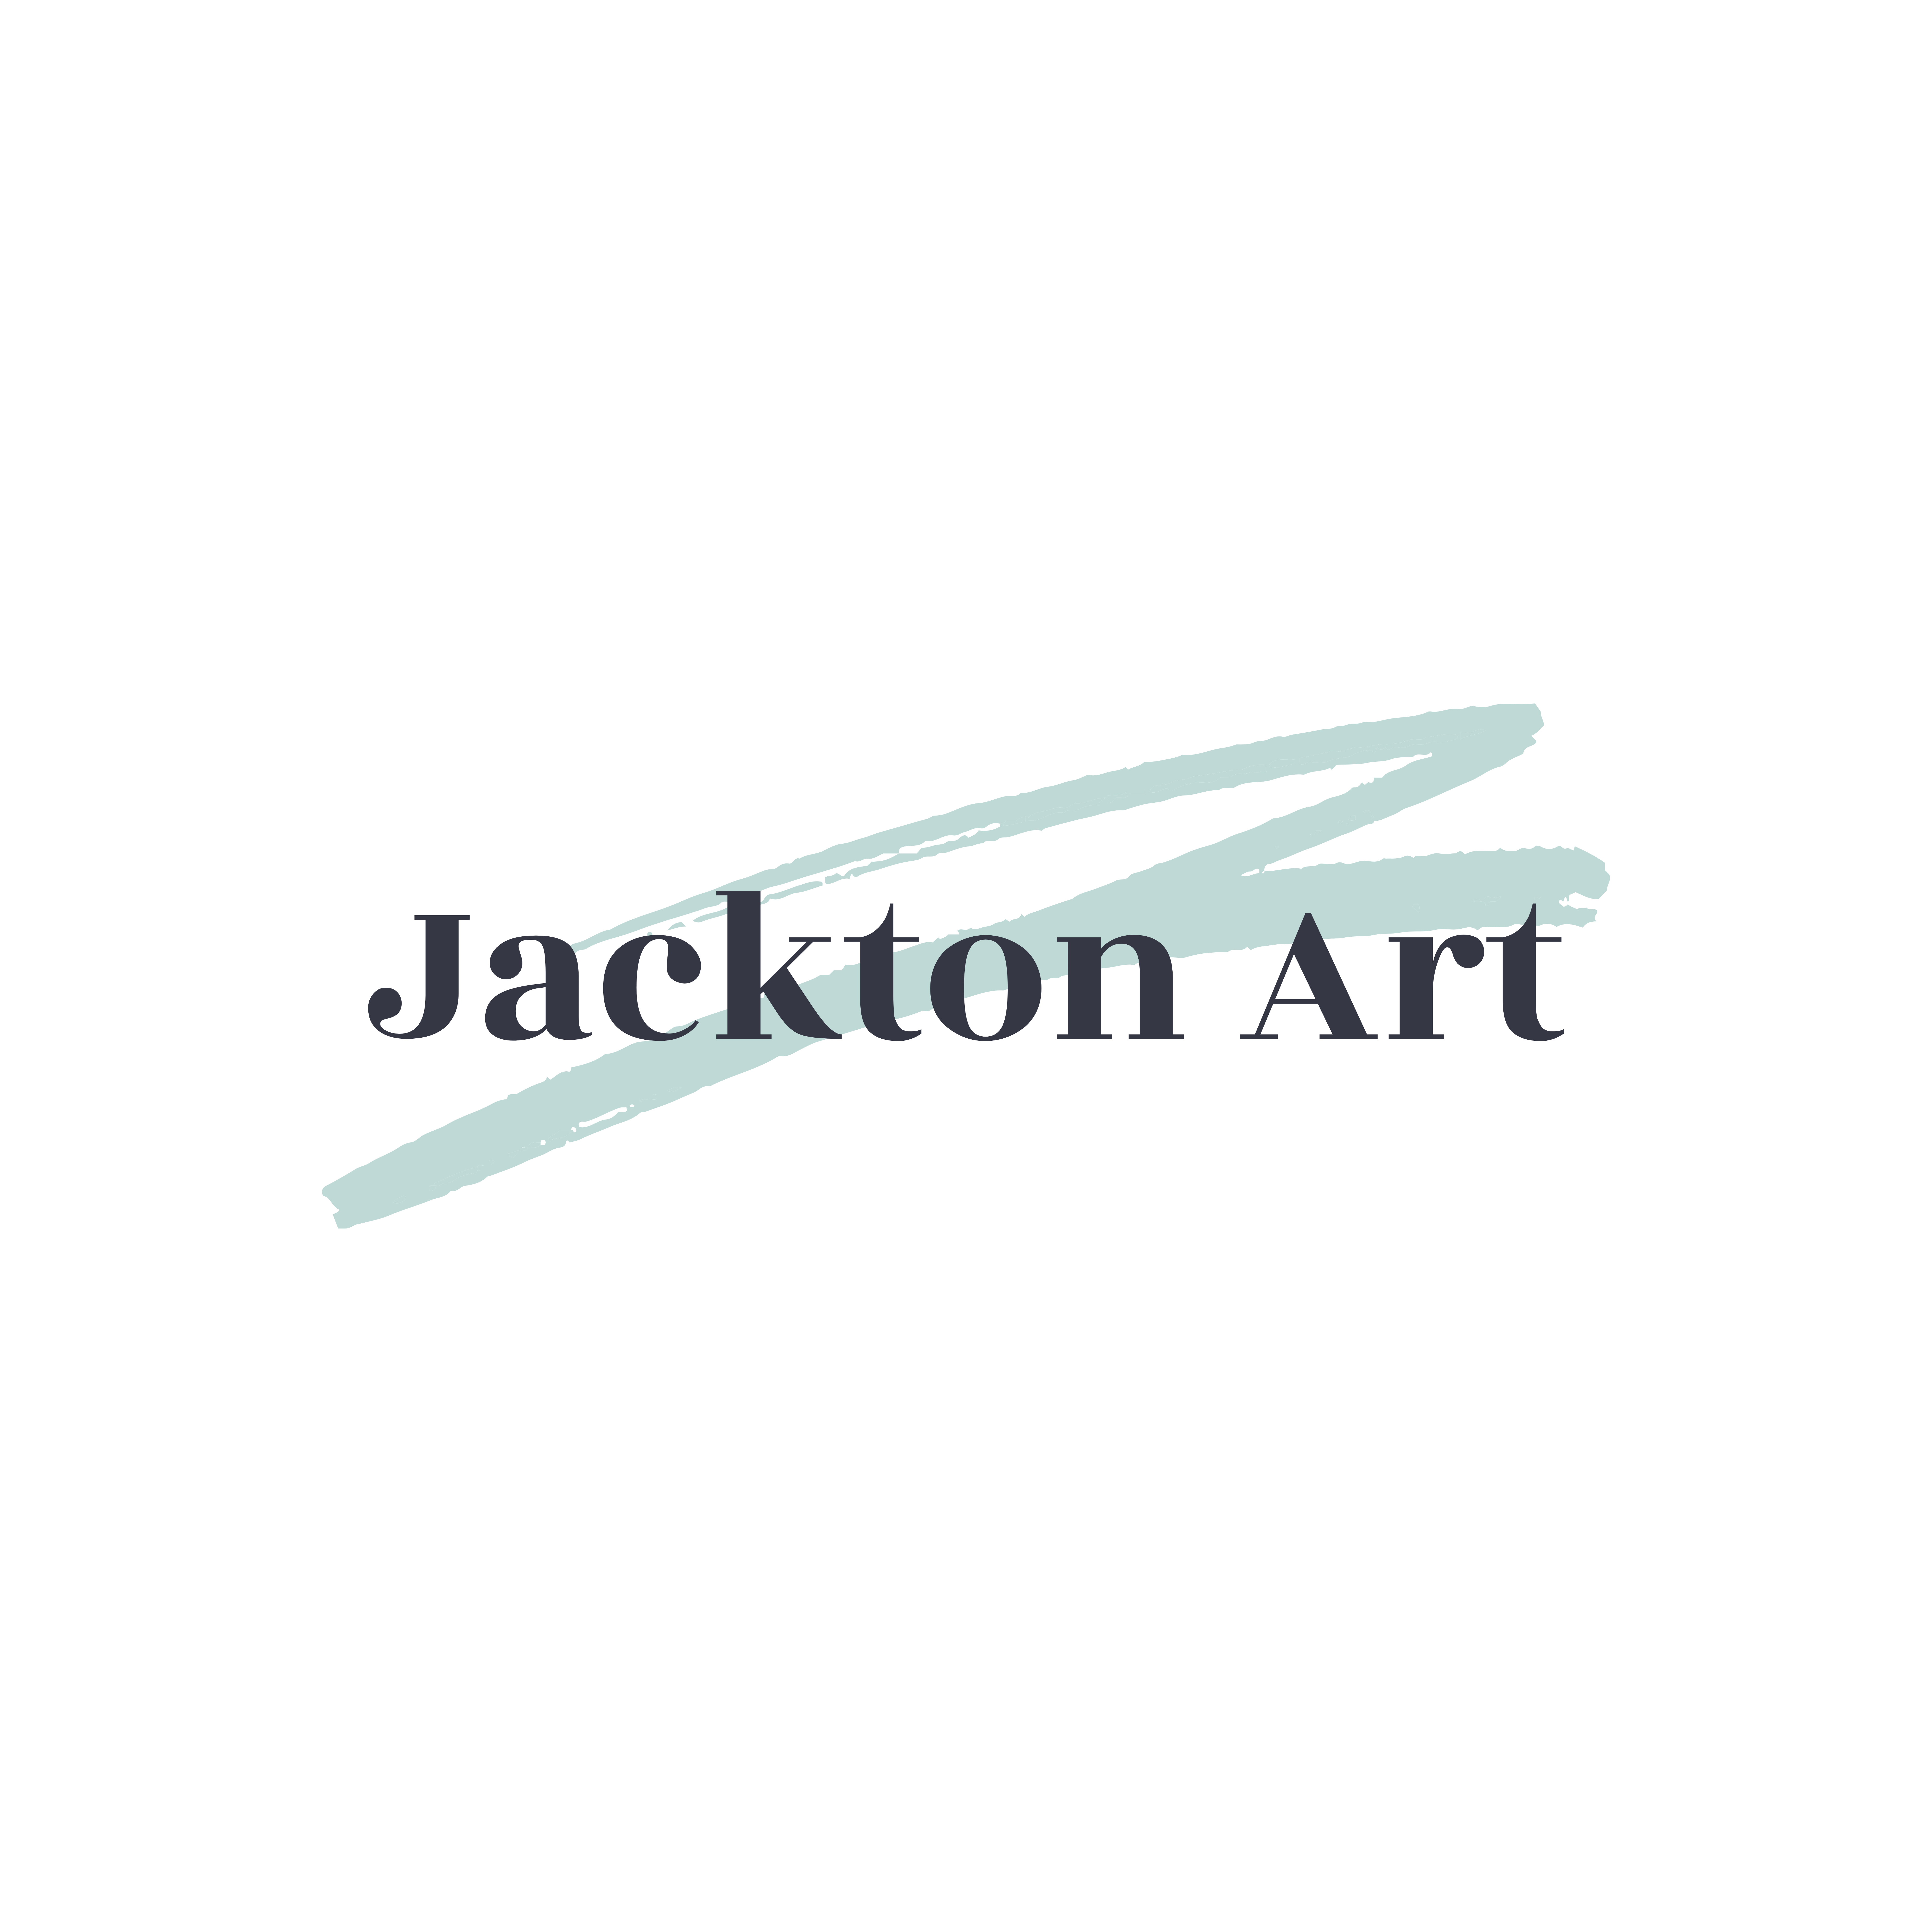 Jackton Art